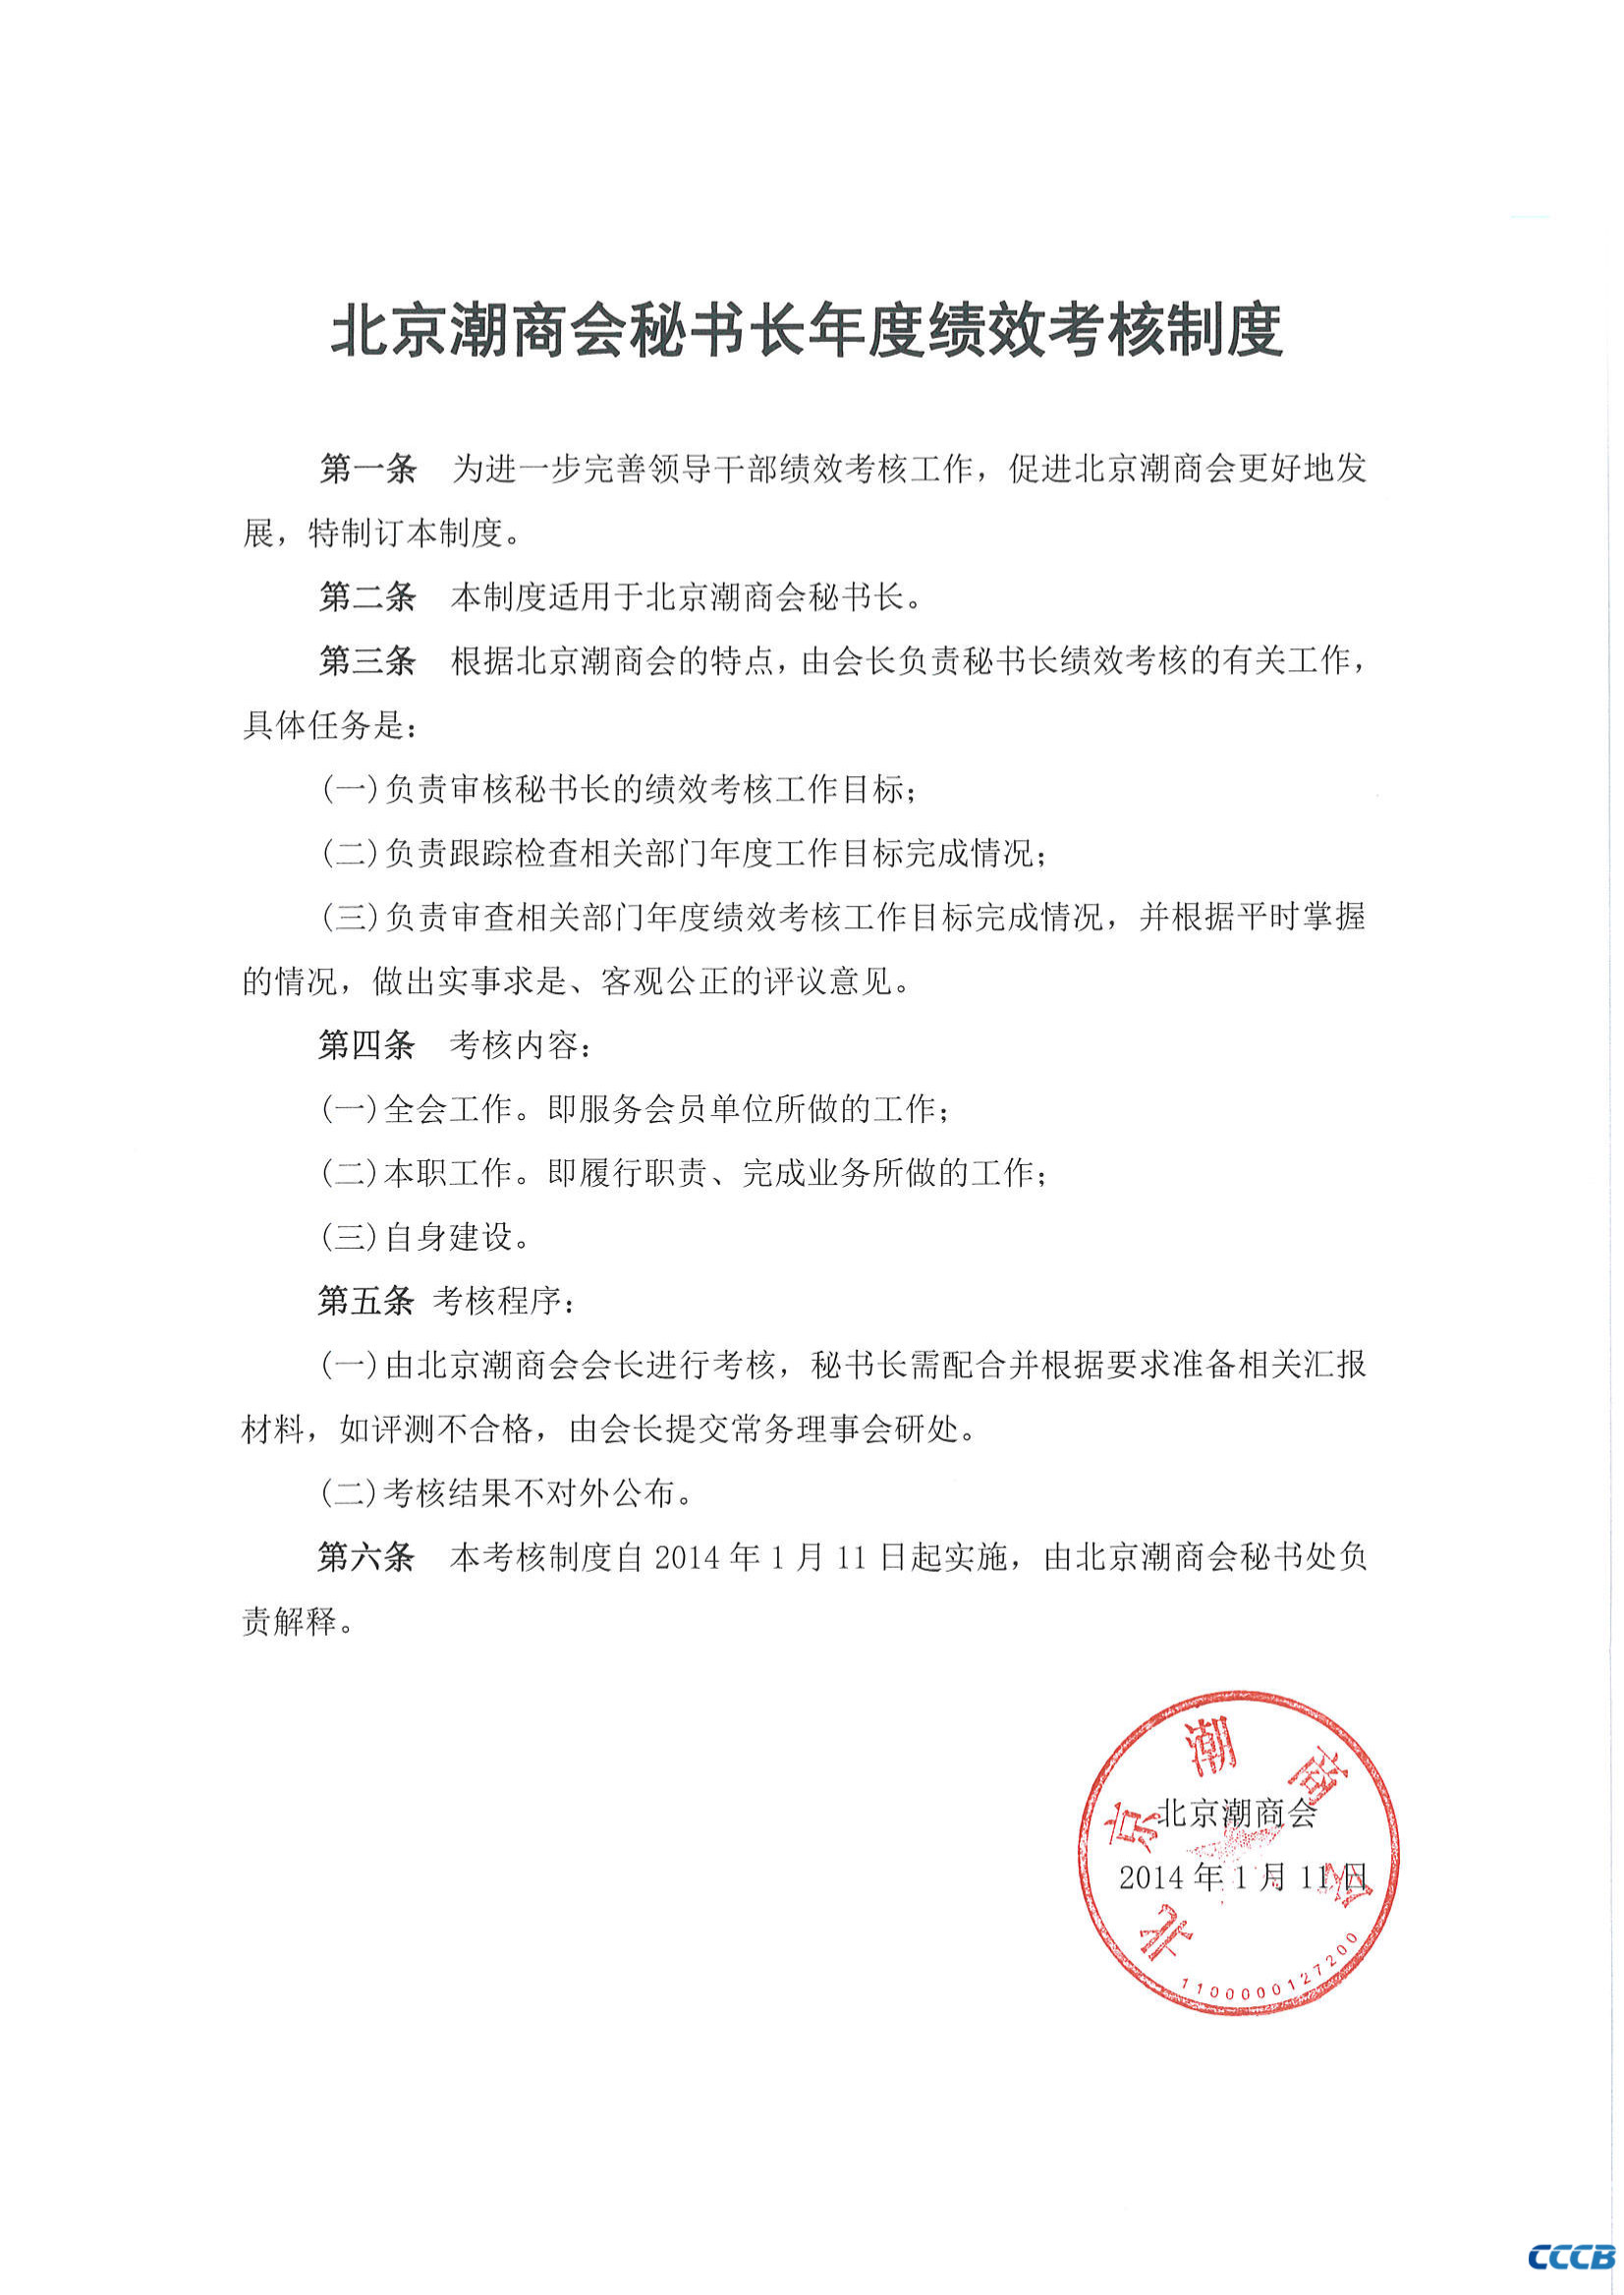 北京潮商会秘书长年度绩效考核制度